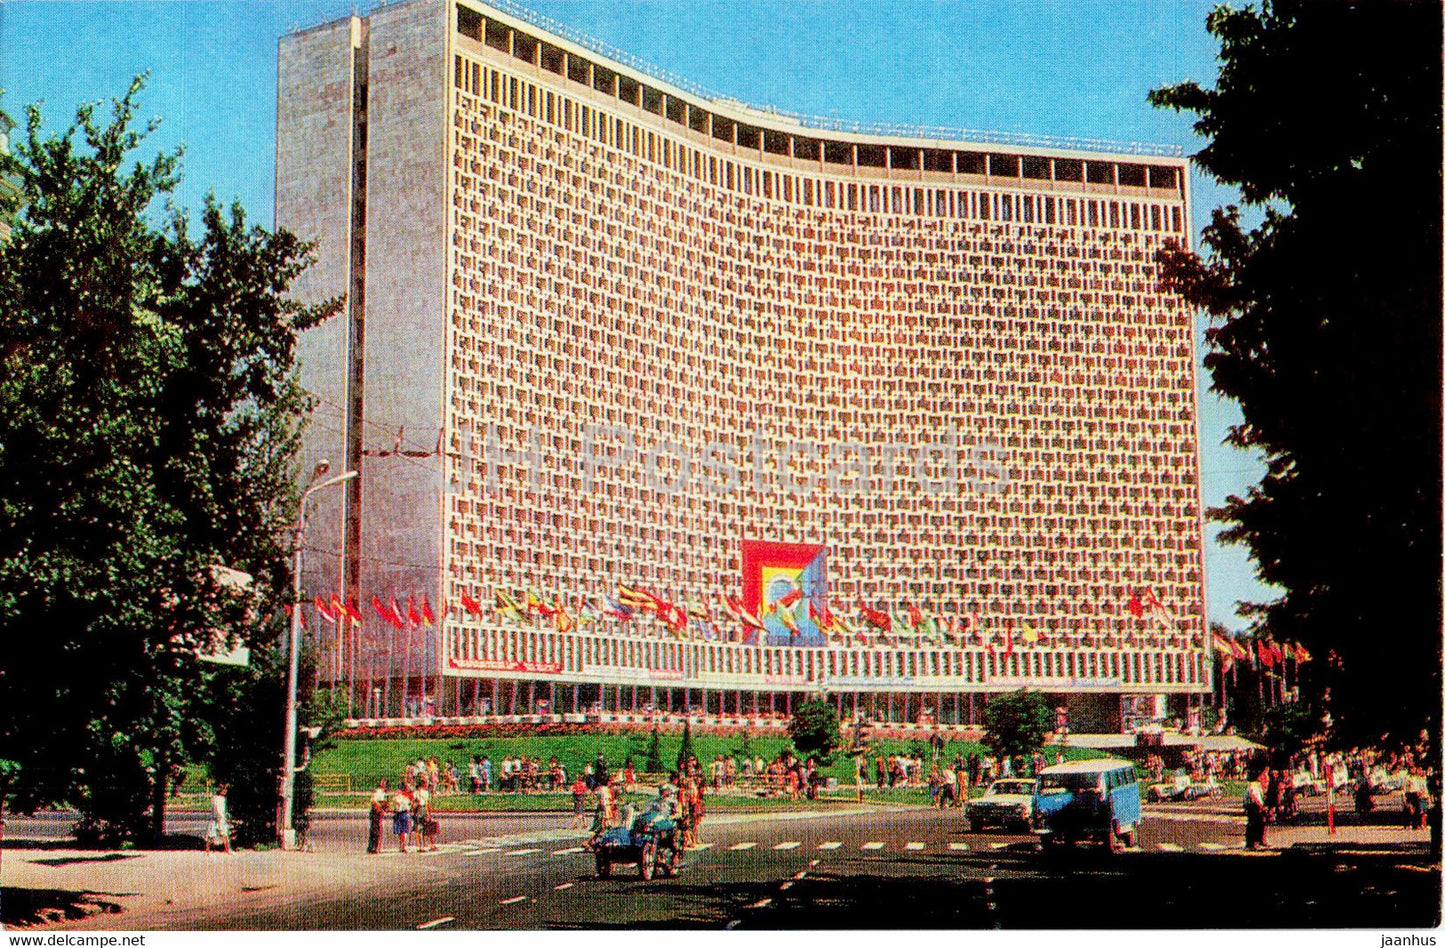 Tashkent - hotel Uzbekistan - 1980 - Uzbekistan USSR - unused - JH Postcards